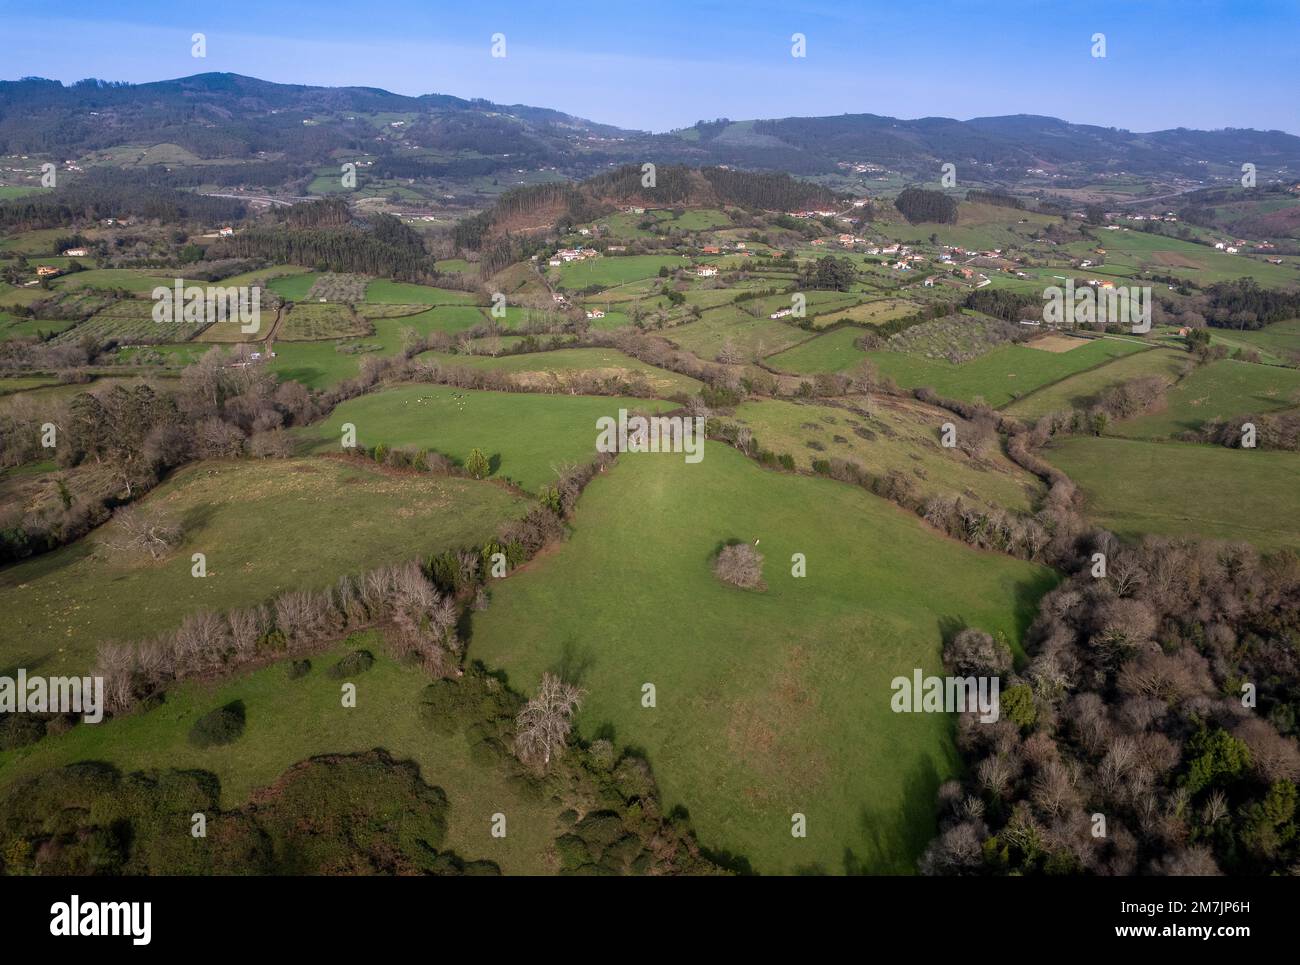 Vue aérienne du paysage rural, Villaviciosa, Asturies, Espagne Banque D'Images